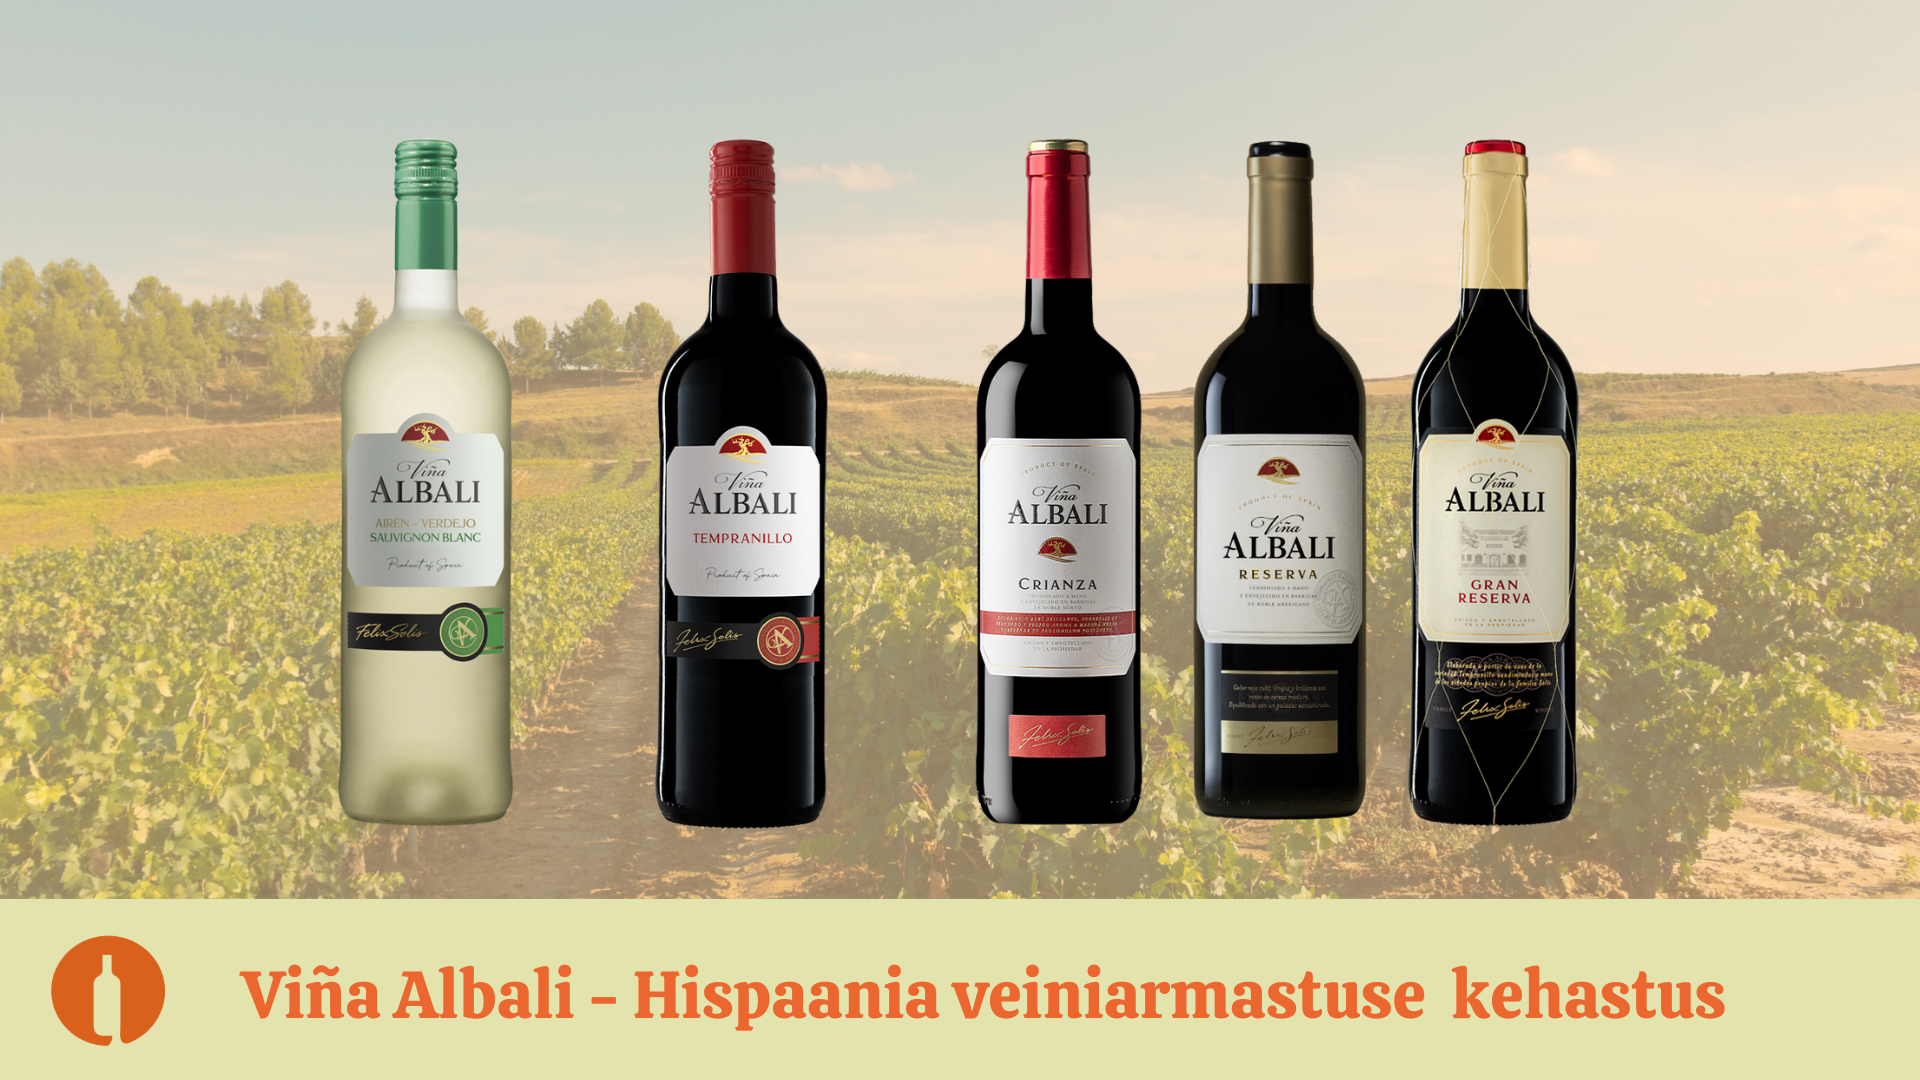 Viña Albali – Solís perekonna kummardus Hispaania veiniarmastusele!